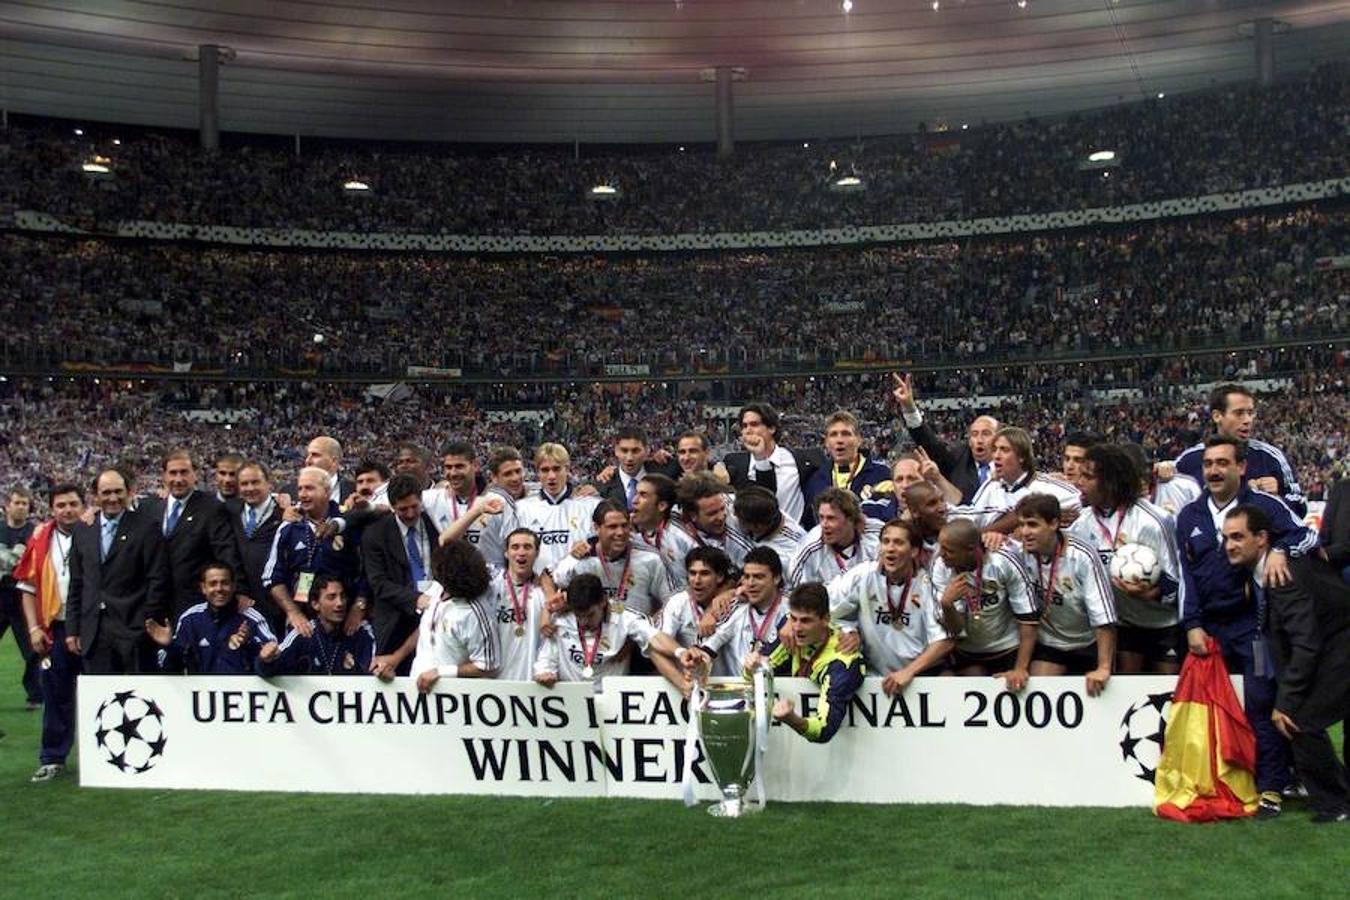 El Real Madrid consigue en París su octava Champions Leagues frente al Valencia. El partido terminó 3-0 con goles de Morientes, McManaman y Raúl